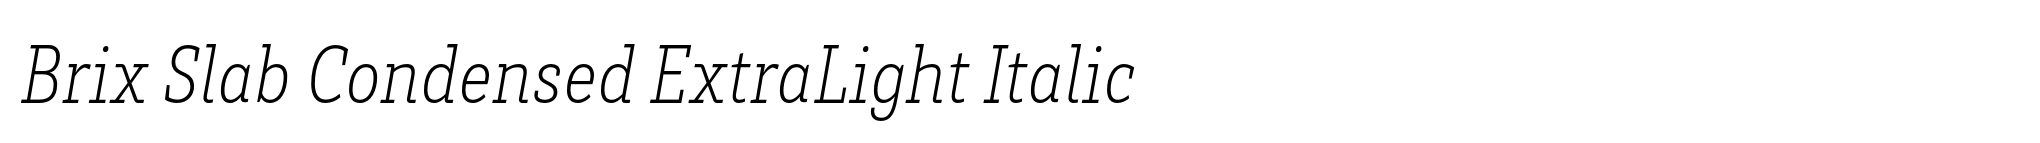 Brix Slab Condensed ExtraLight Italic image